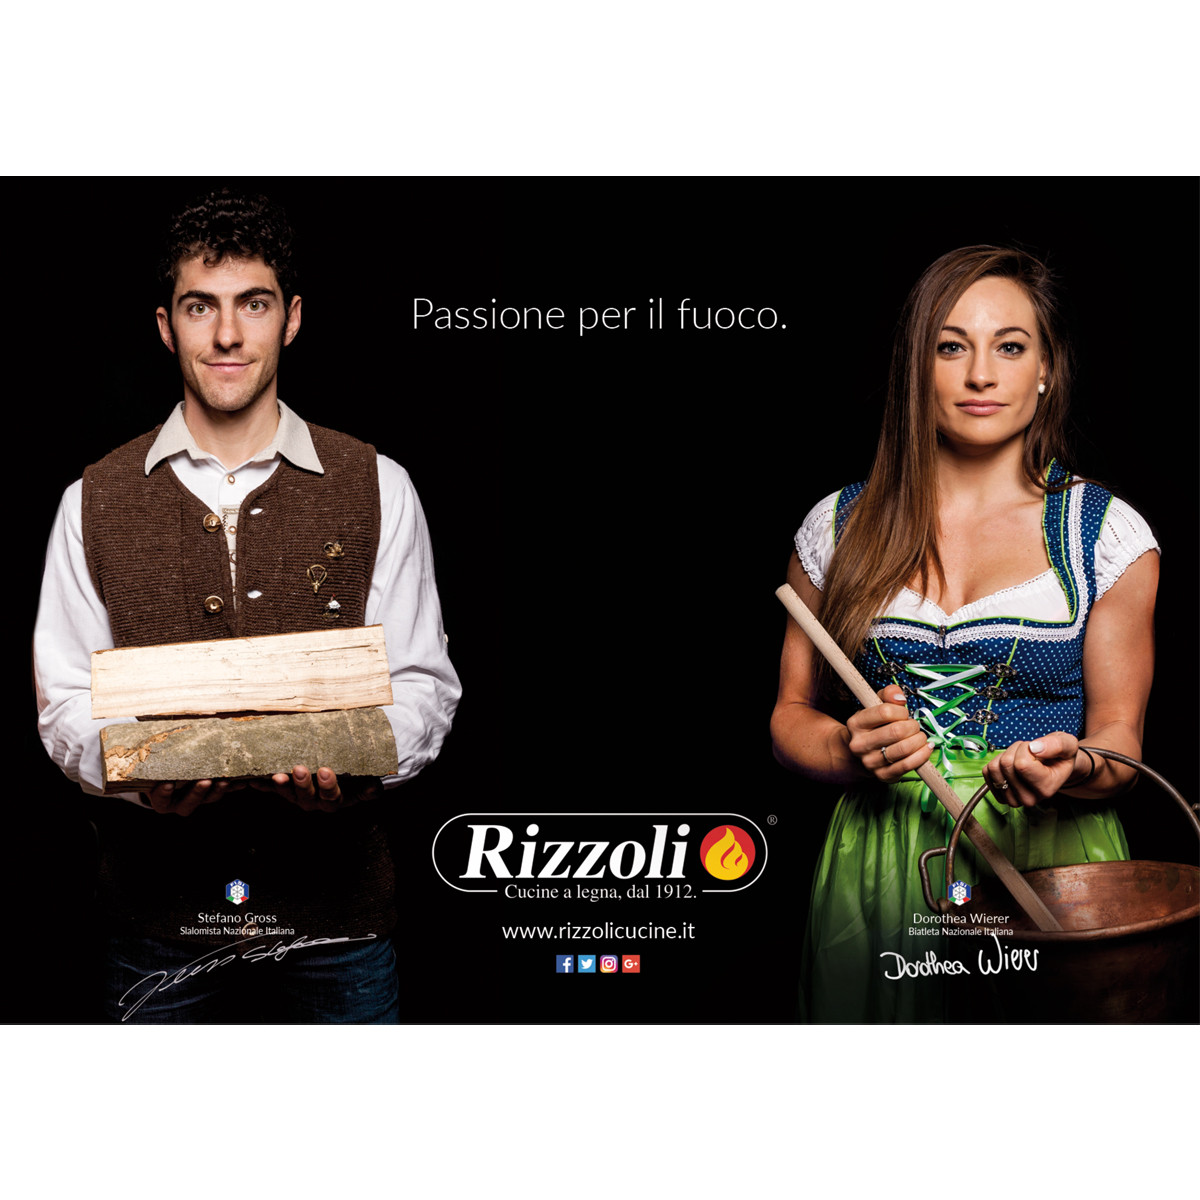 Press | Rizzoli cucine